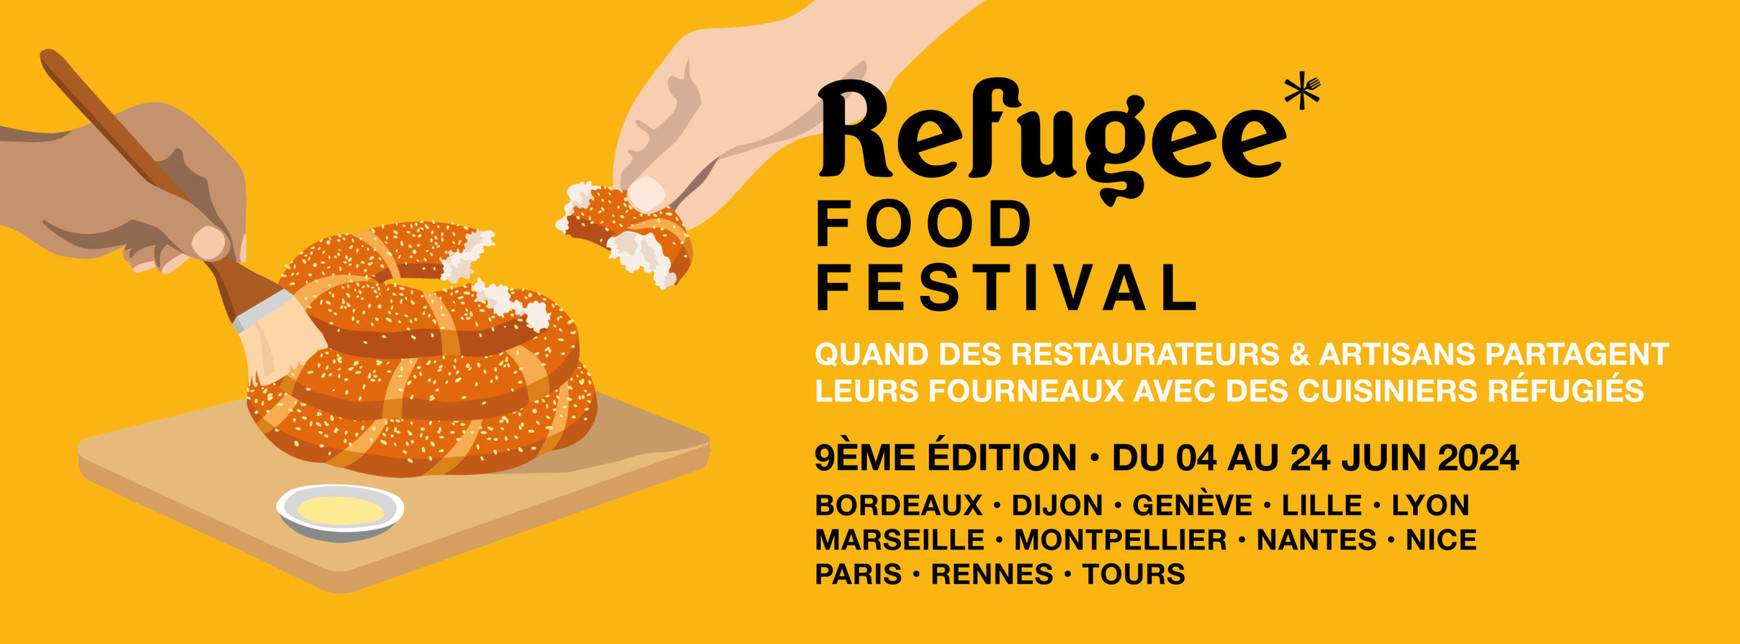 Refugee Food Festival Le Refugee Food Festival revient à Lille du 17 au 22 juin